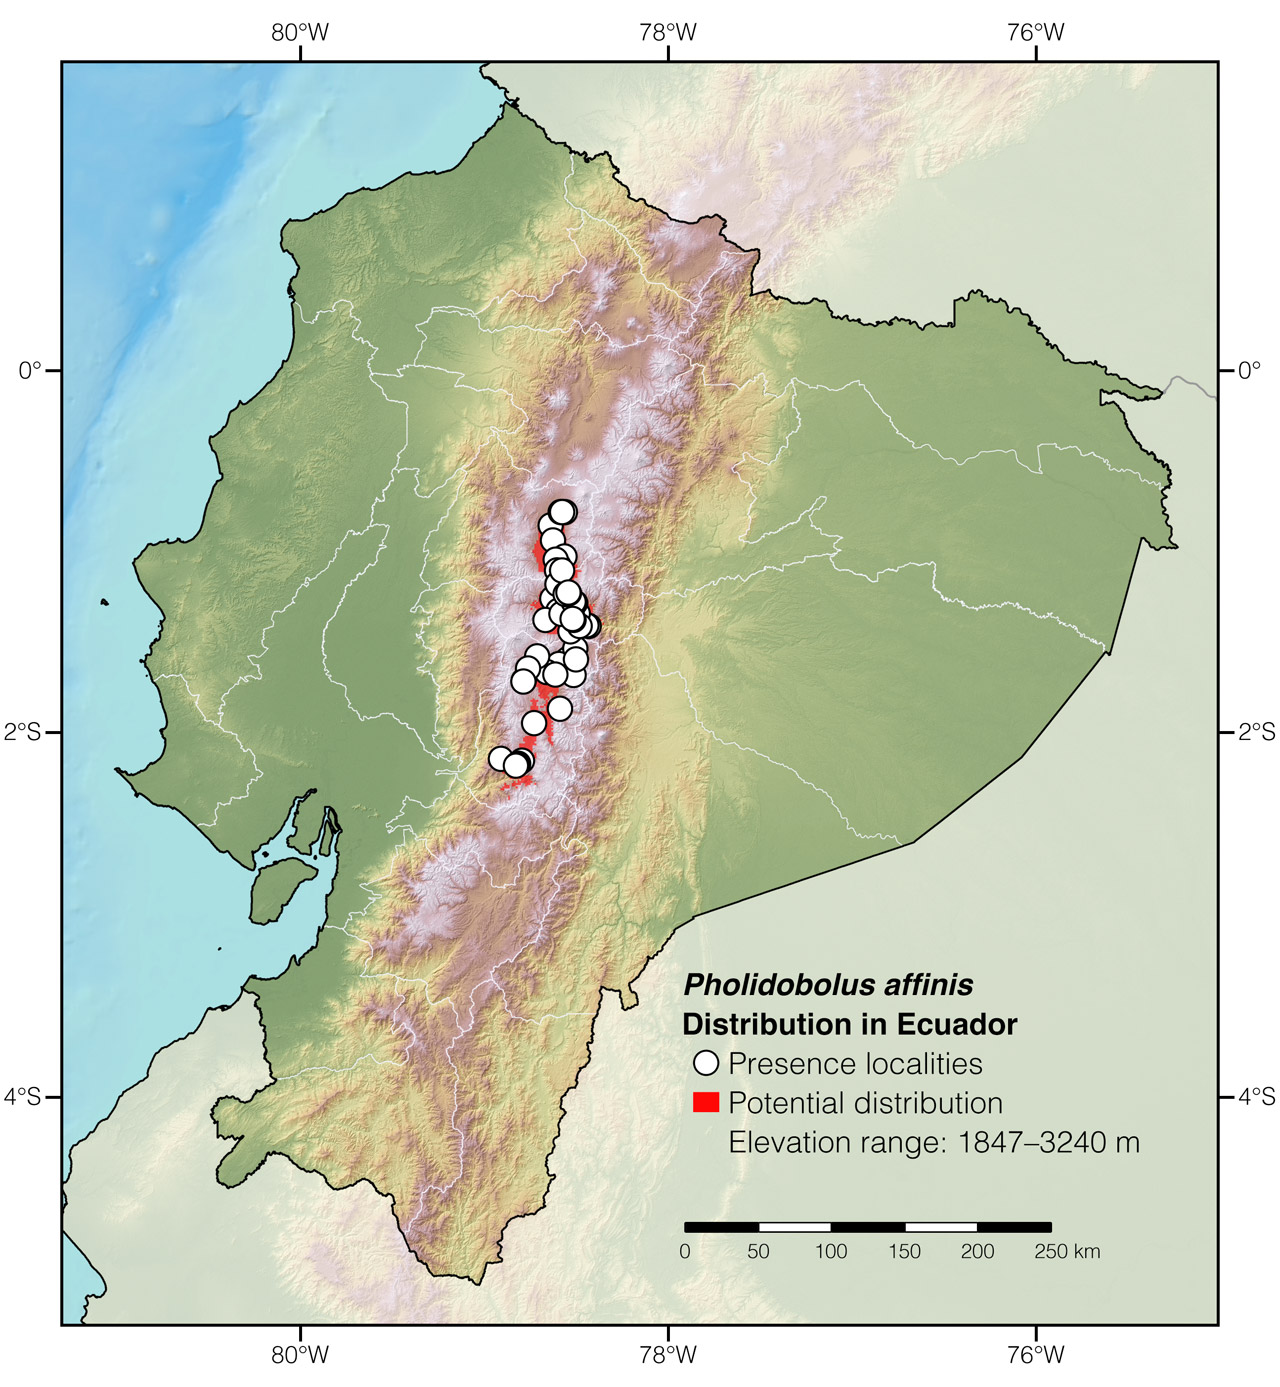 Distribution of Pholidobolus affinis in Ecuador